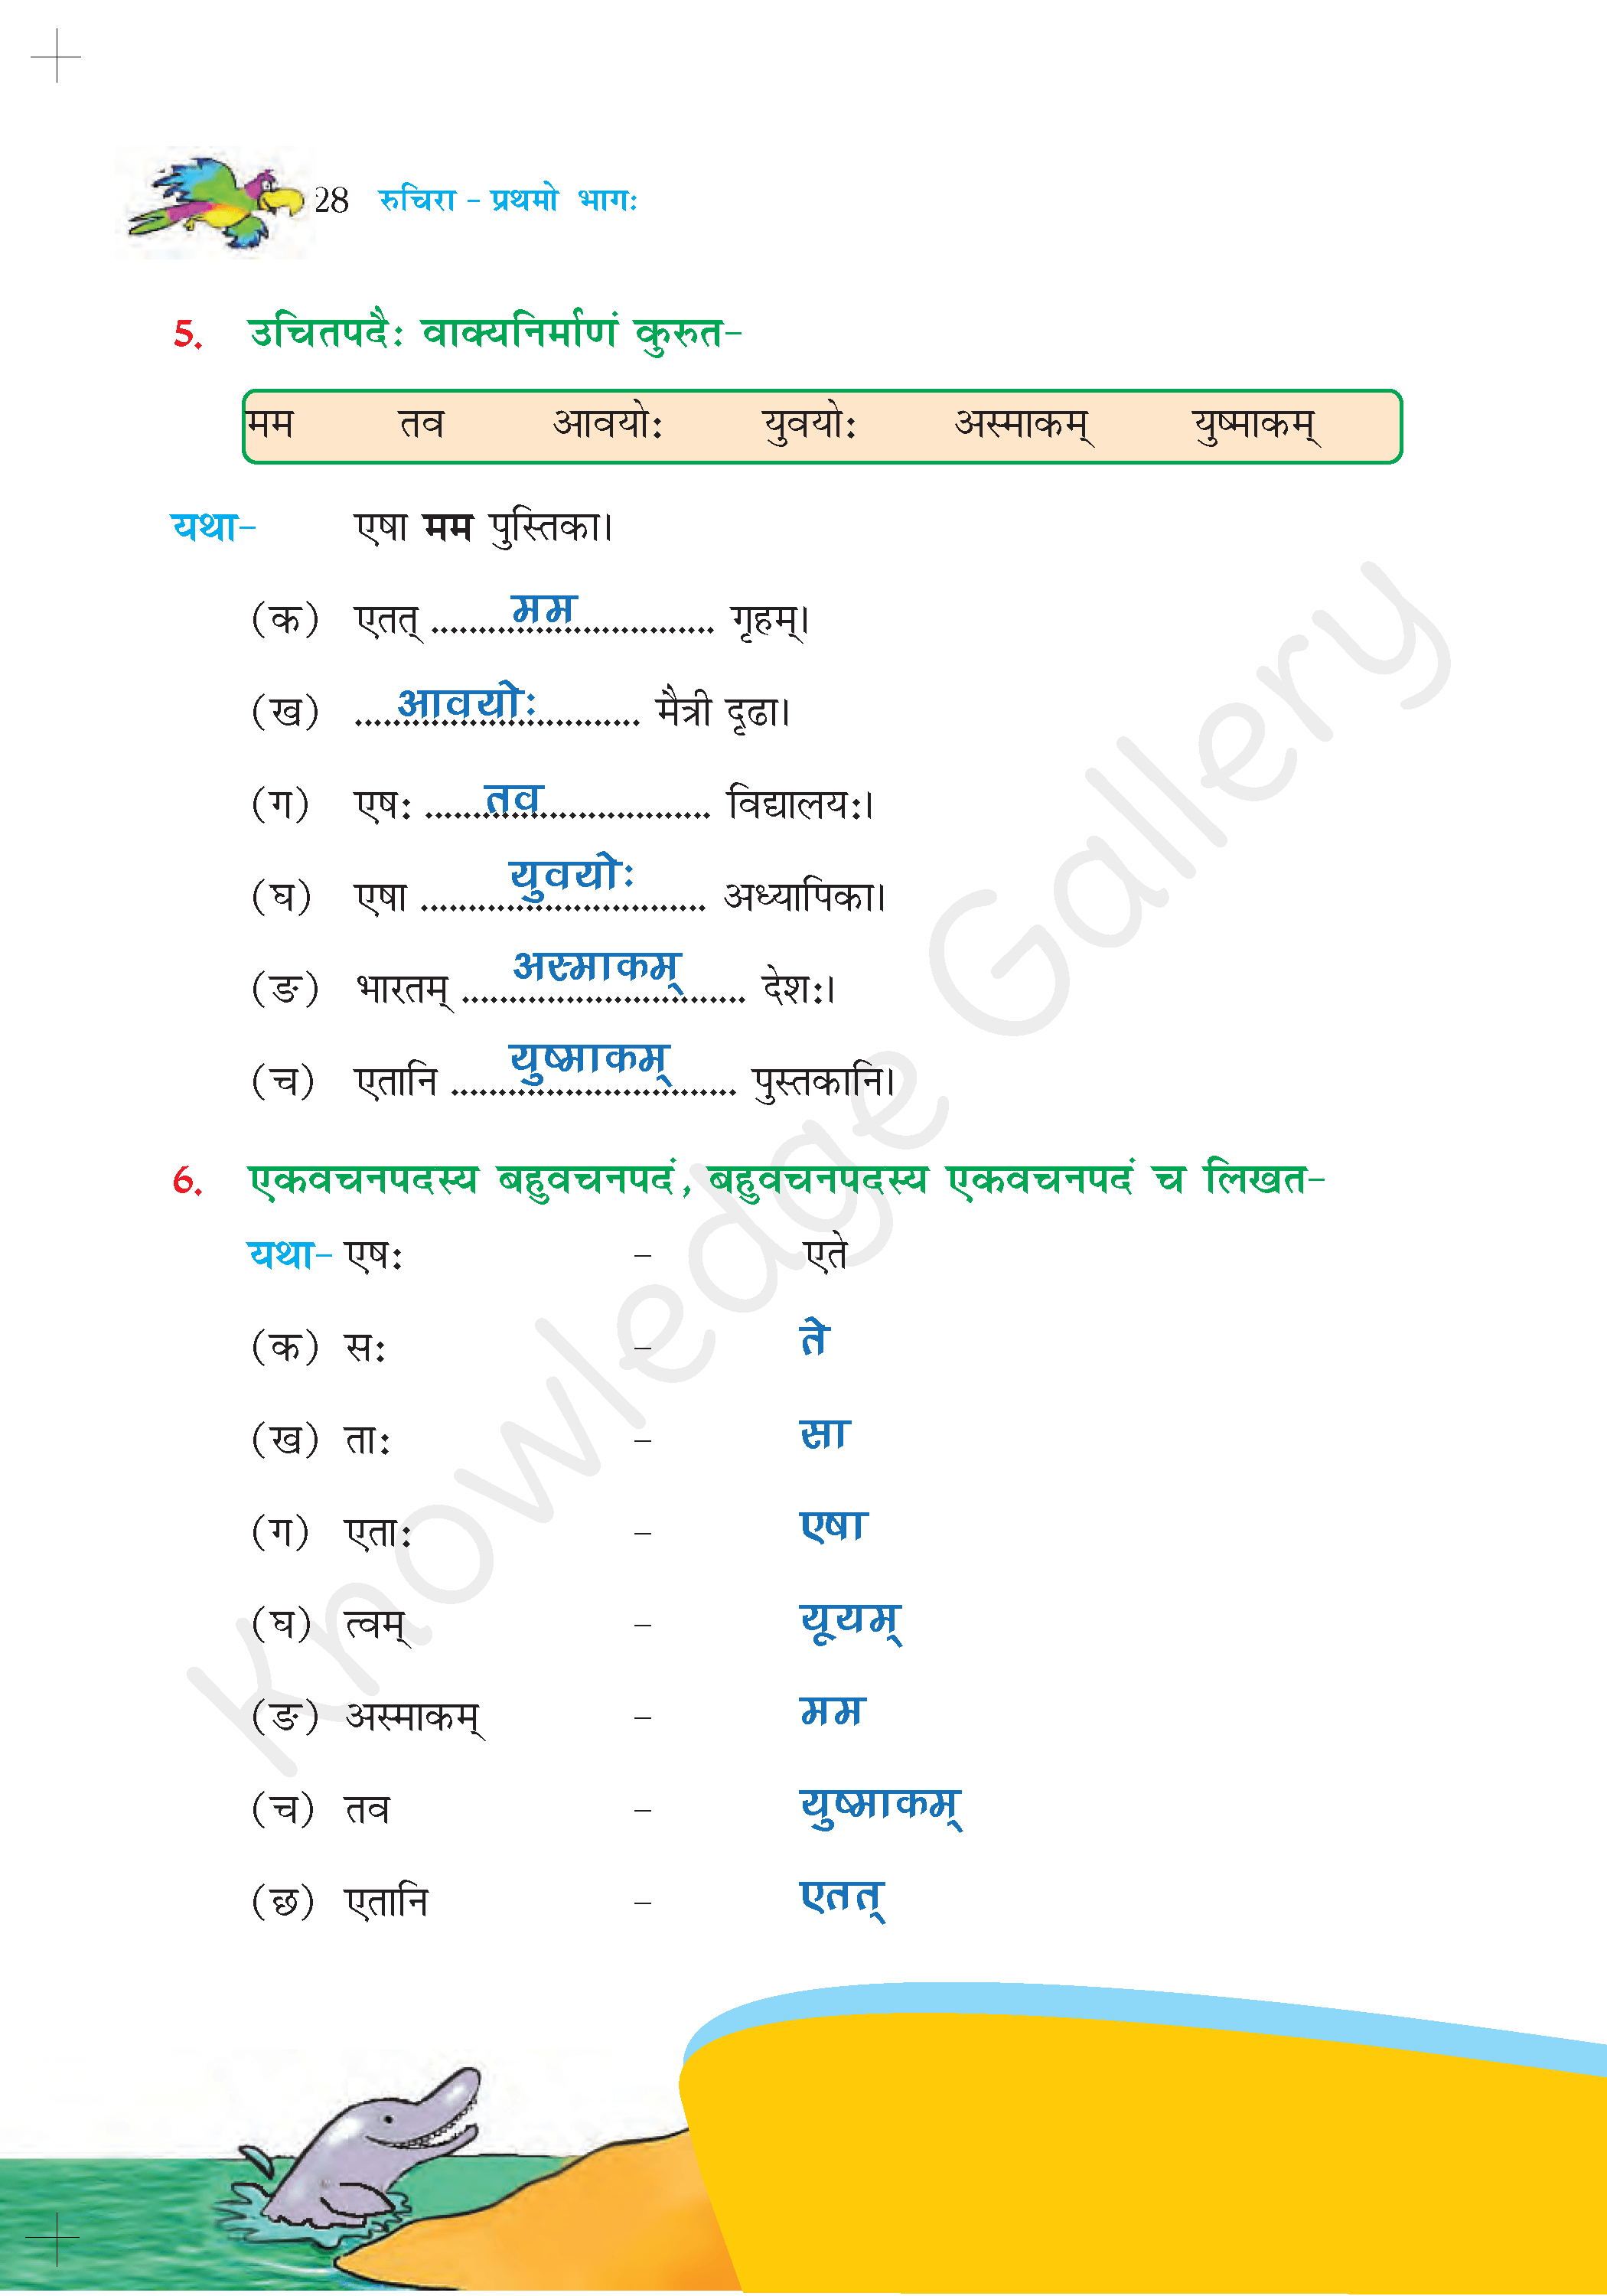 NCERT Solution For Class 6 Sanskrit Chapter 4 part 7